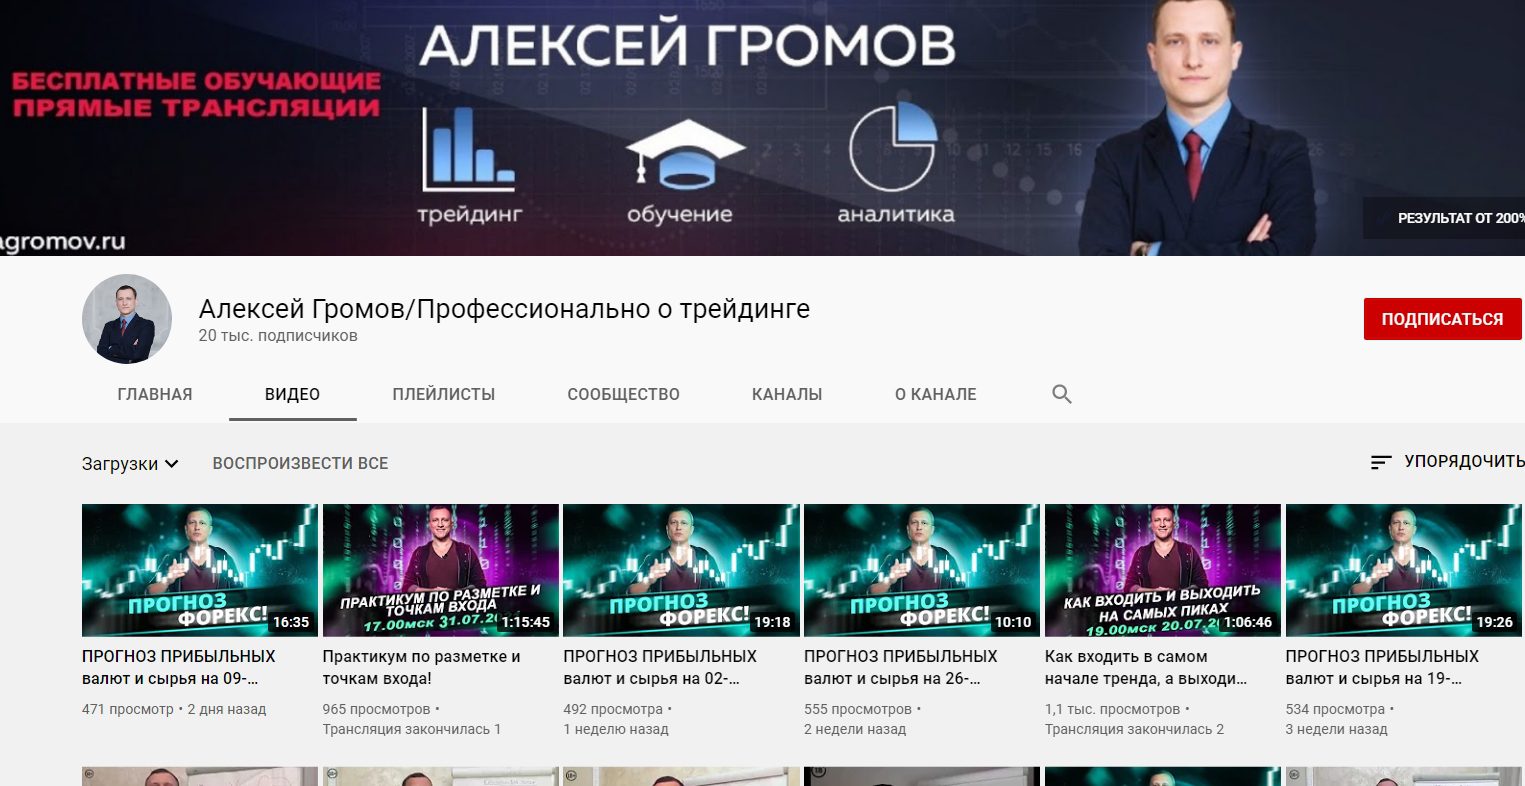 Ютуб канал Алексея Громова